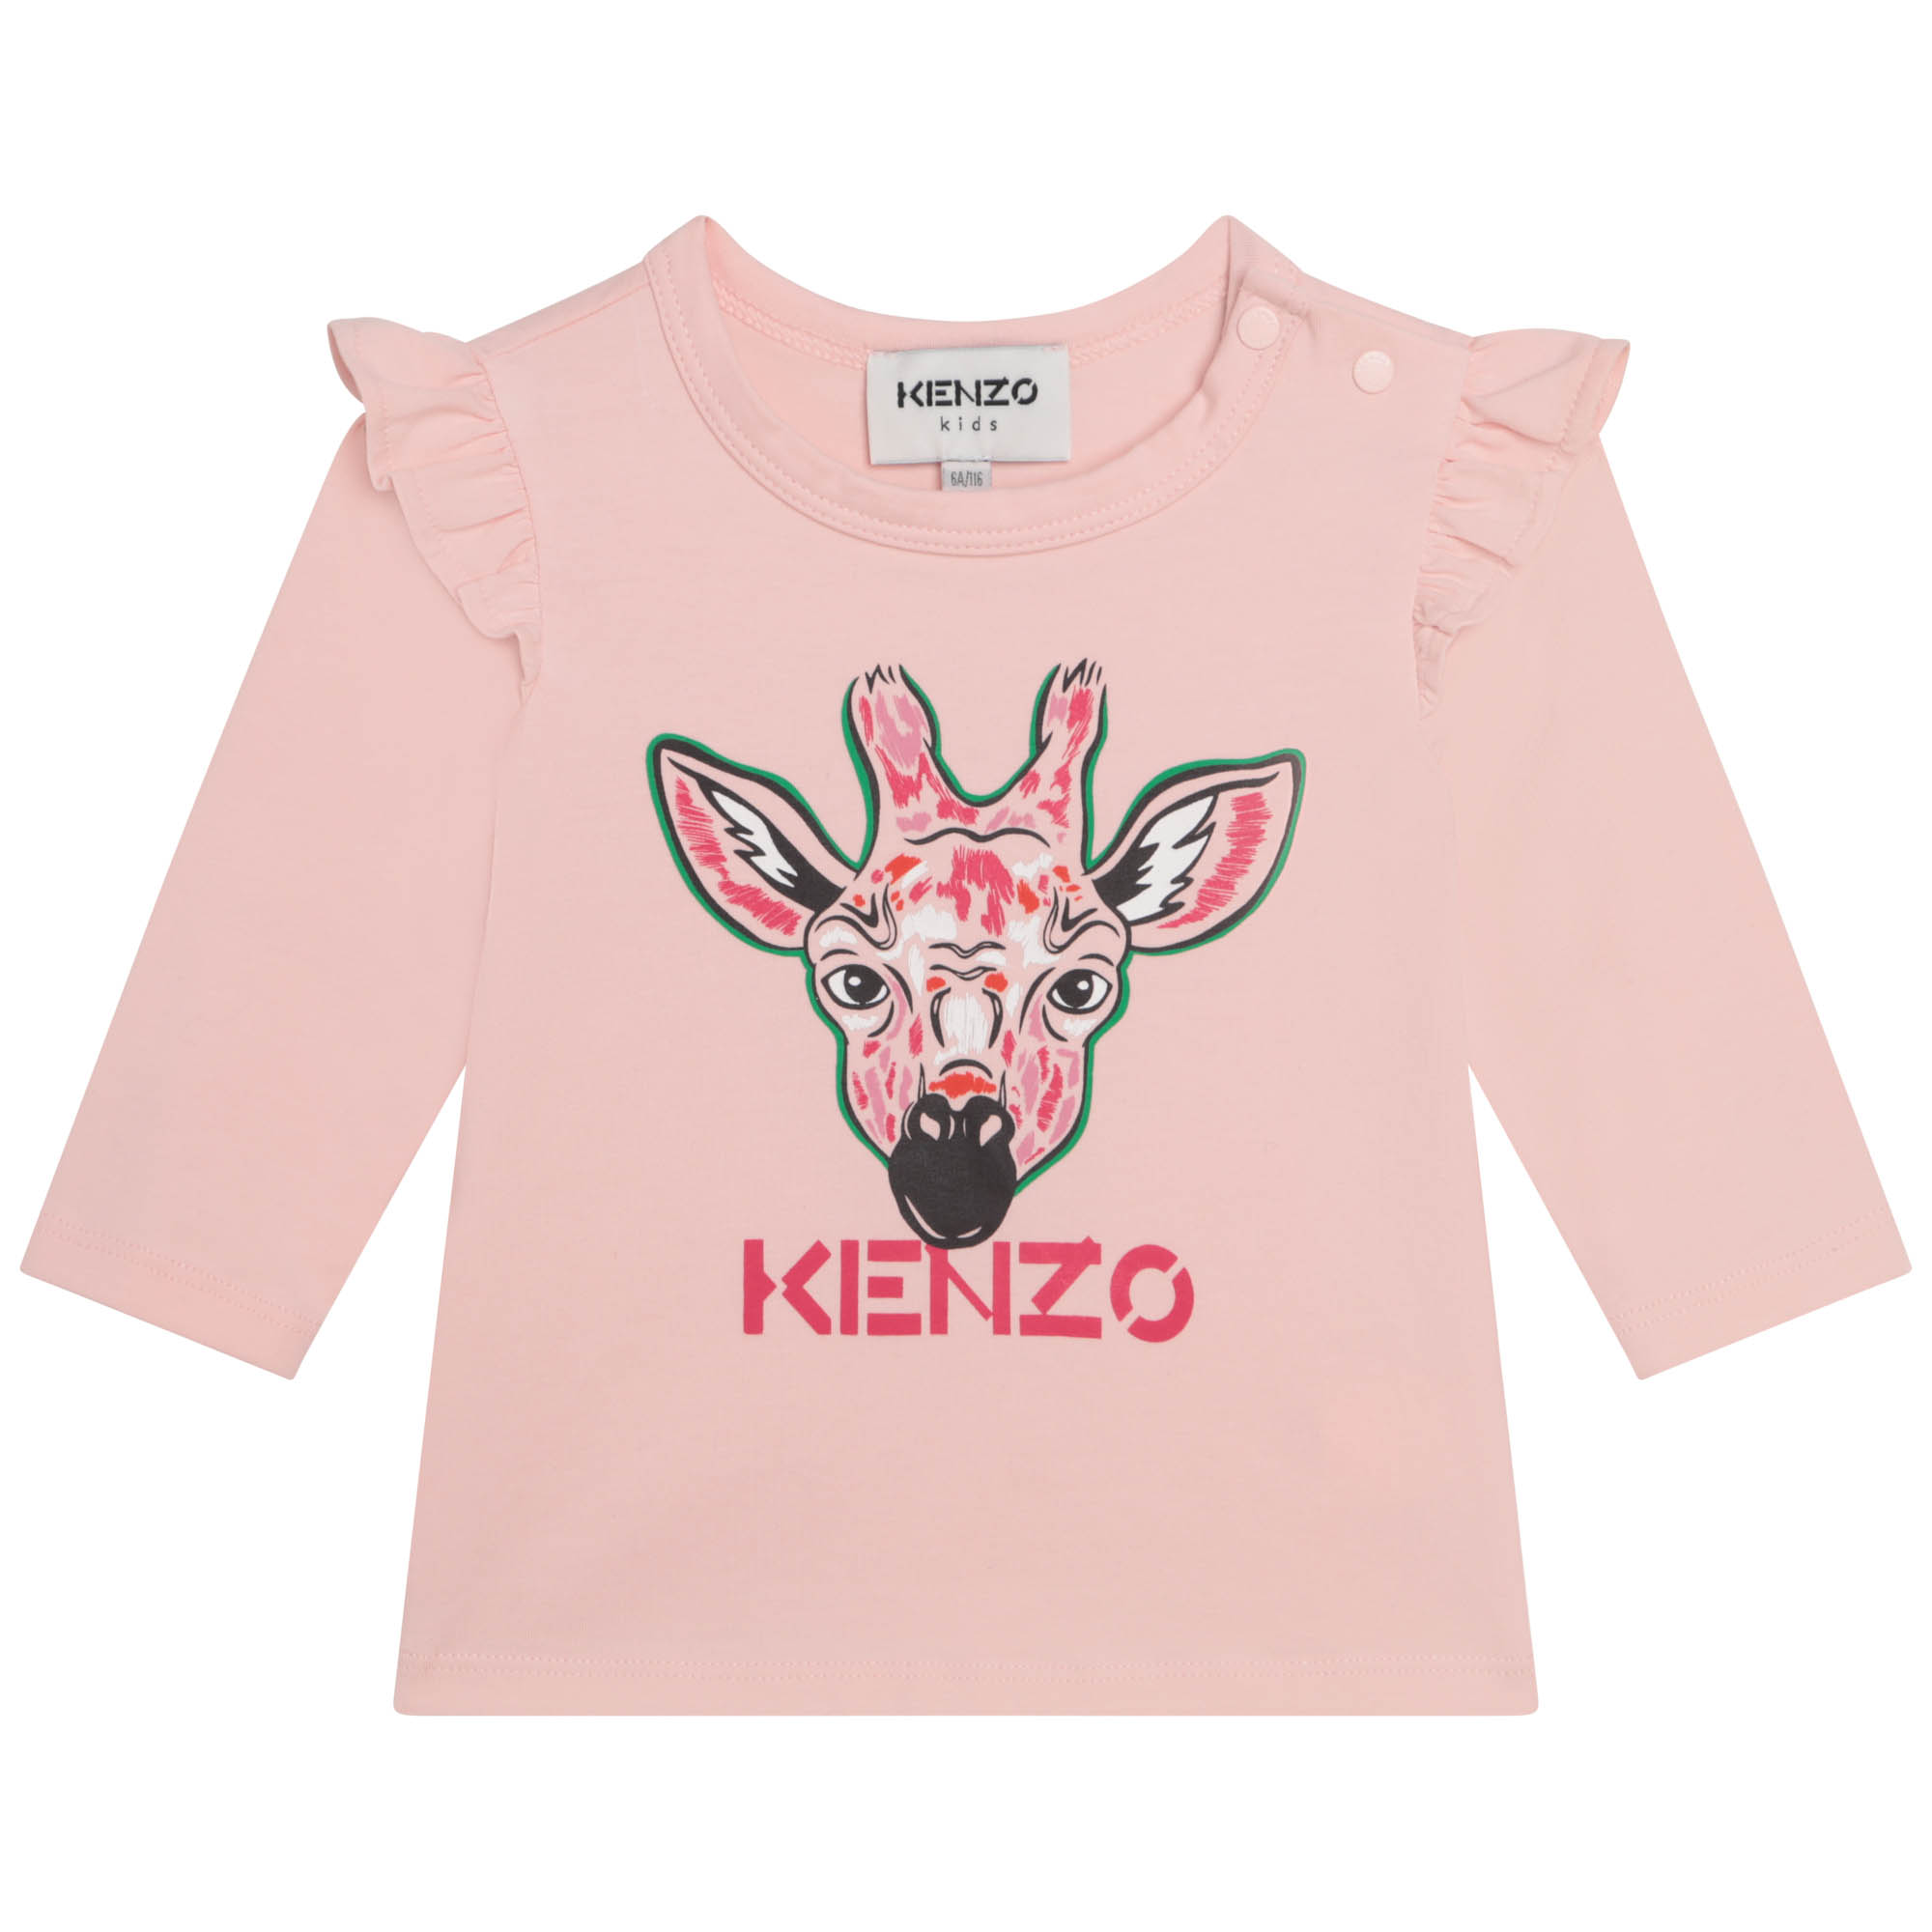 T-shirt in cotone con volant KENZO KIDS Per BAMBINA